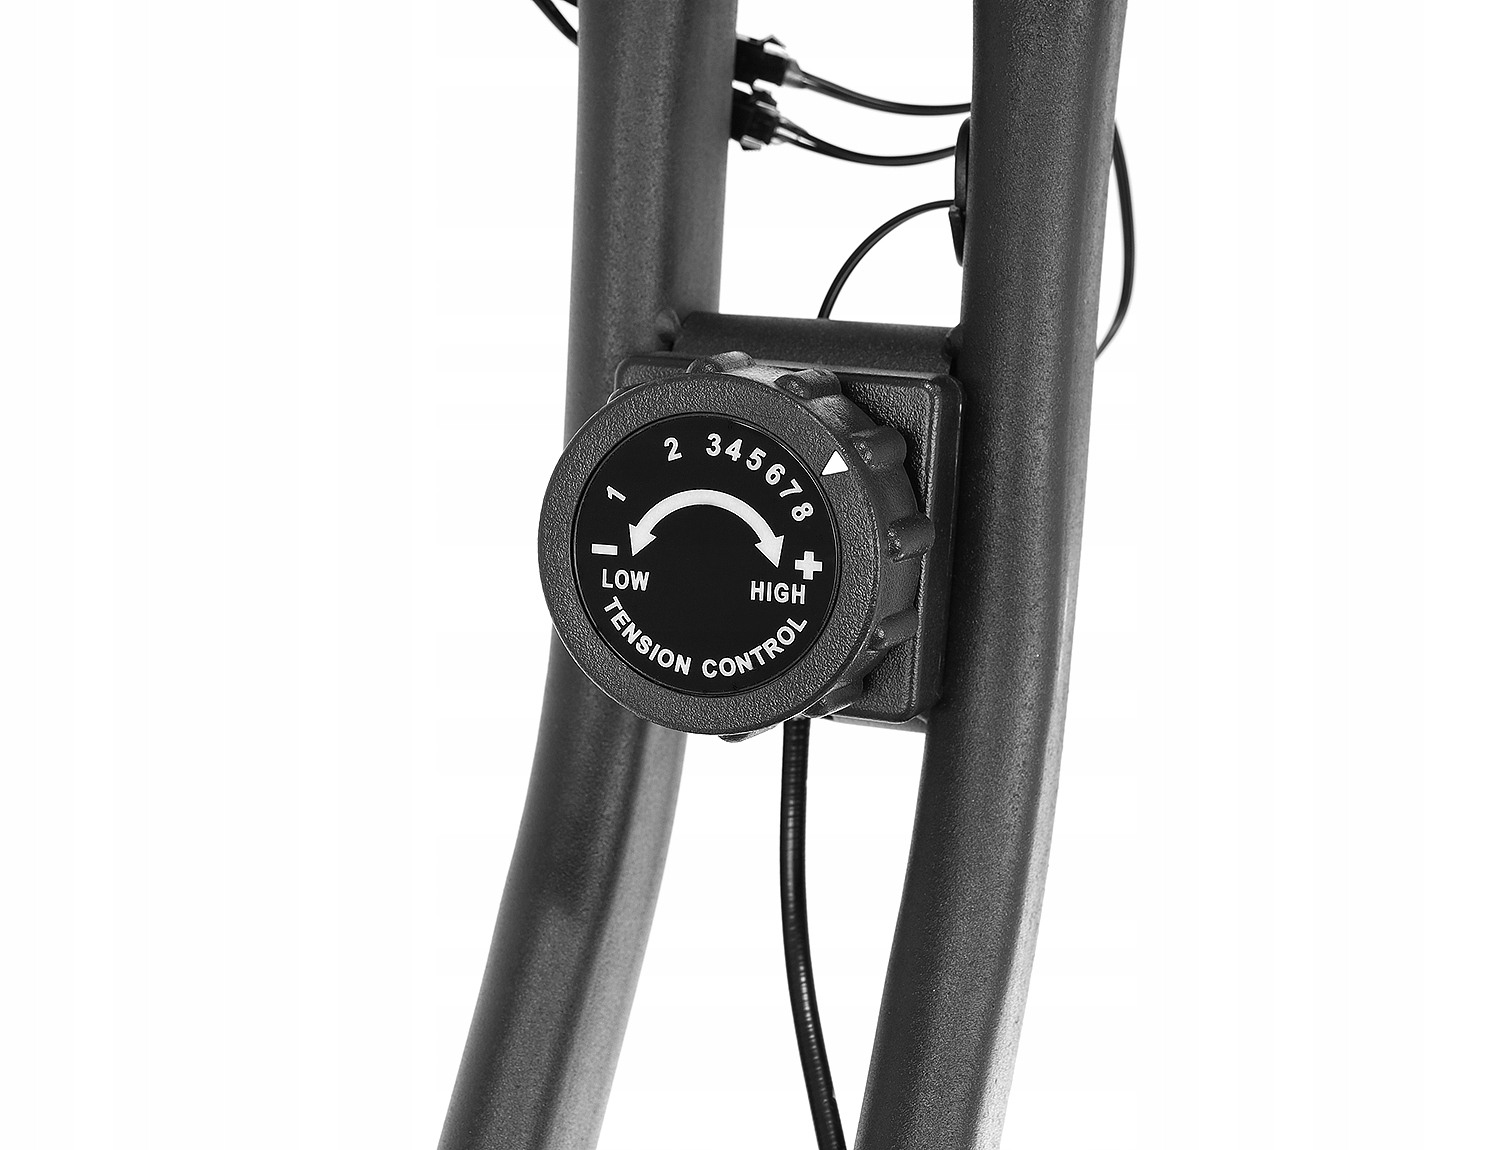 Rowerek Stacjonarny Rower Treningowy Składany Cechy dodatkowe możliwość złożenia regulacja siedziska sensory dotykowe uchwyty na stopy wyświetlacz